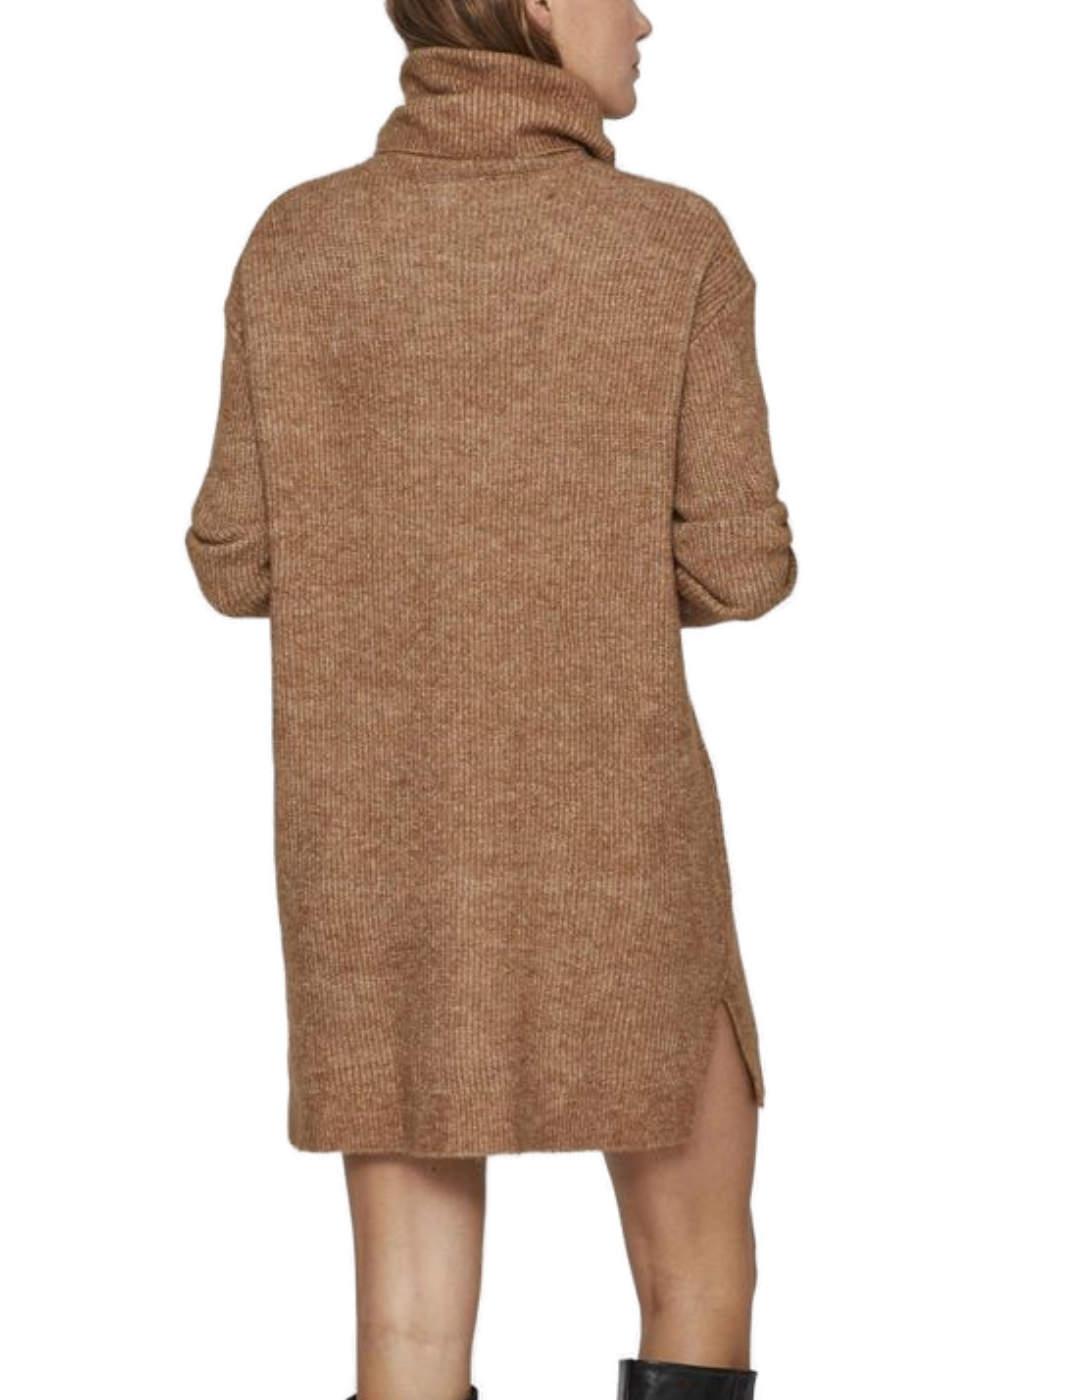 Vestido Vila Cilia de cuello alto marrón tostado de mujer